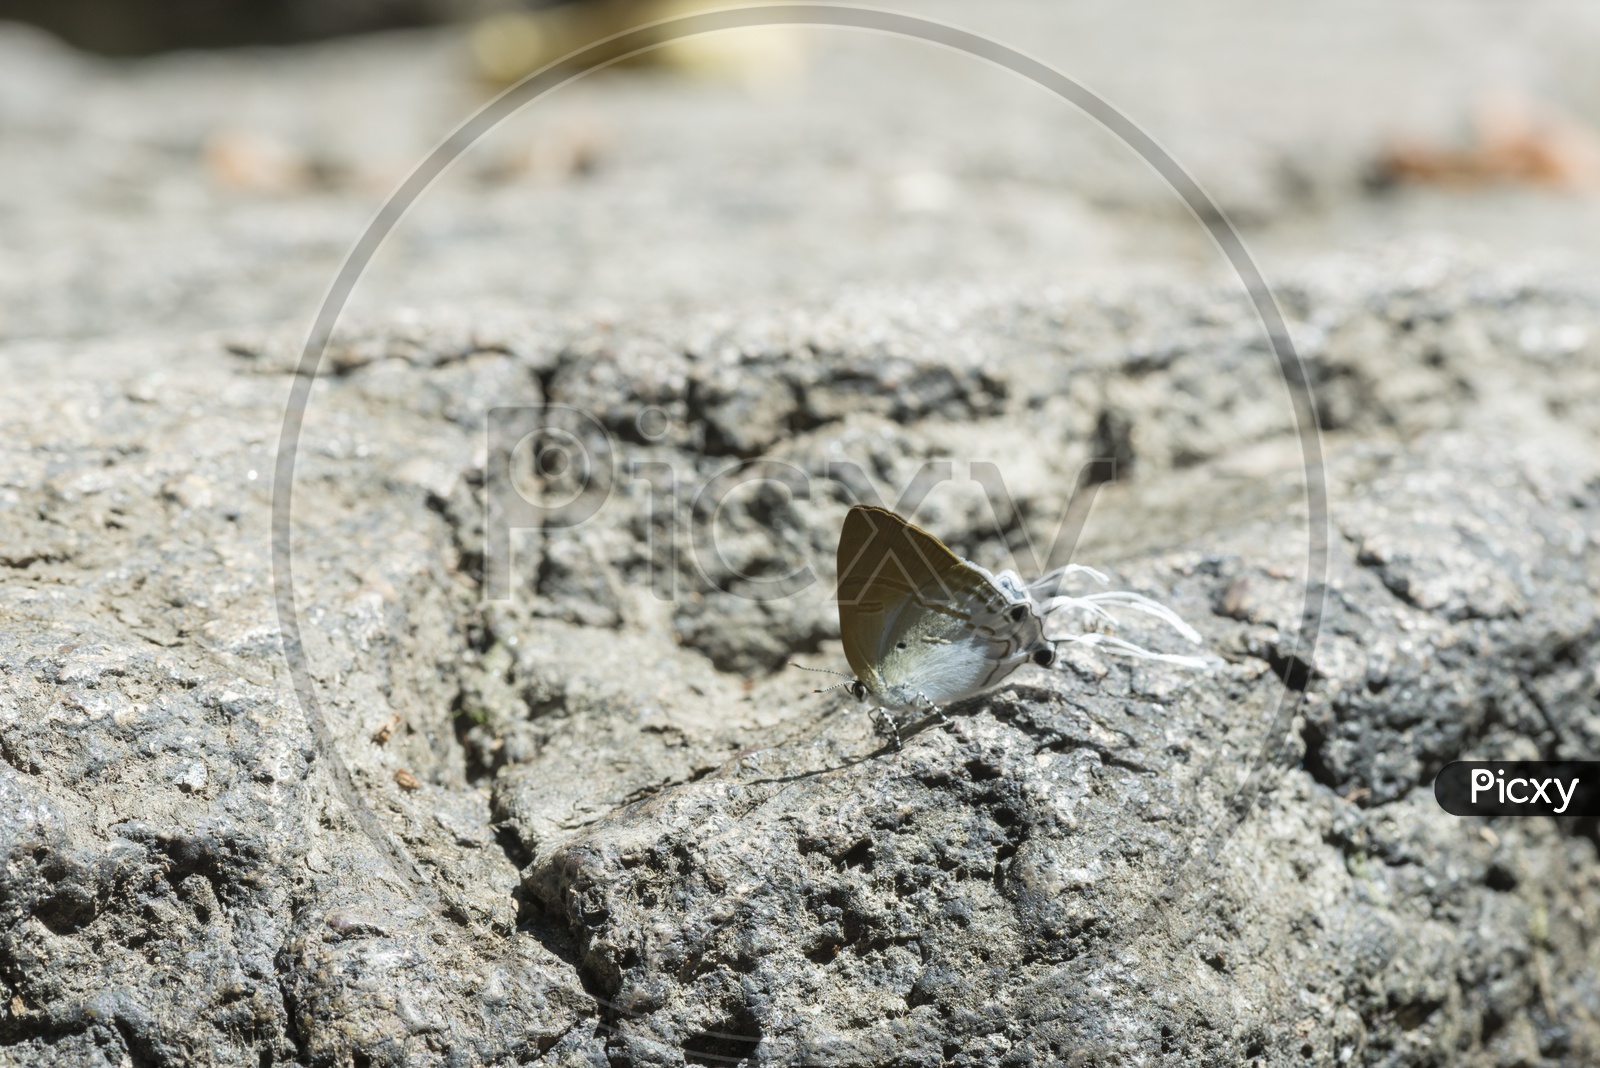 Butterfly on a Rock